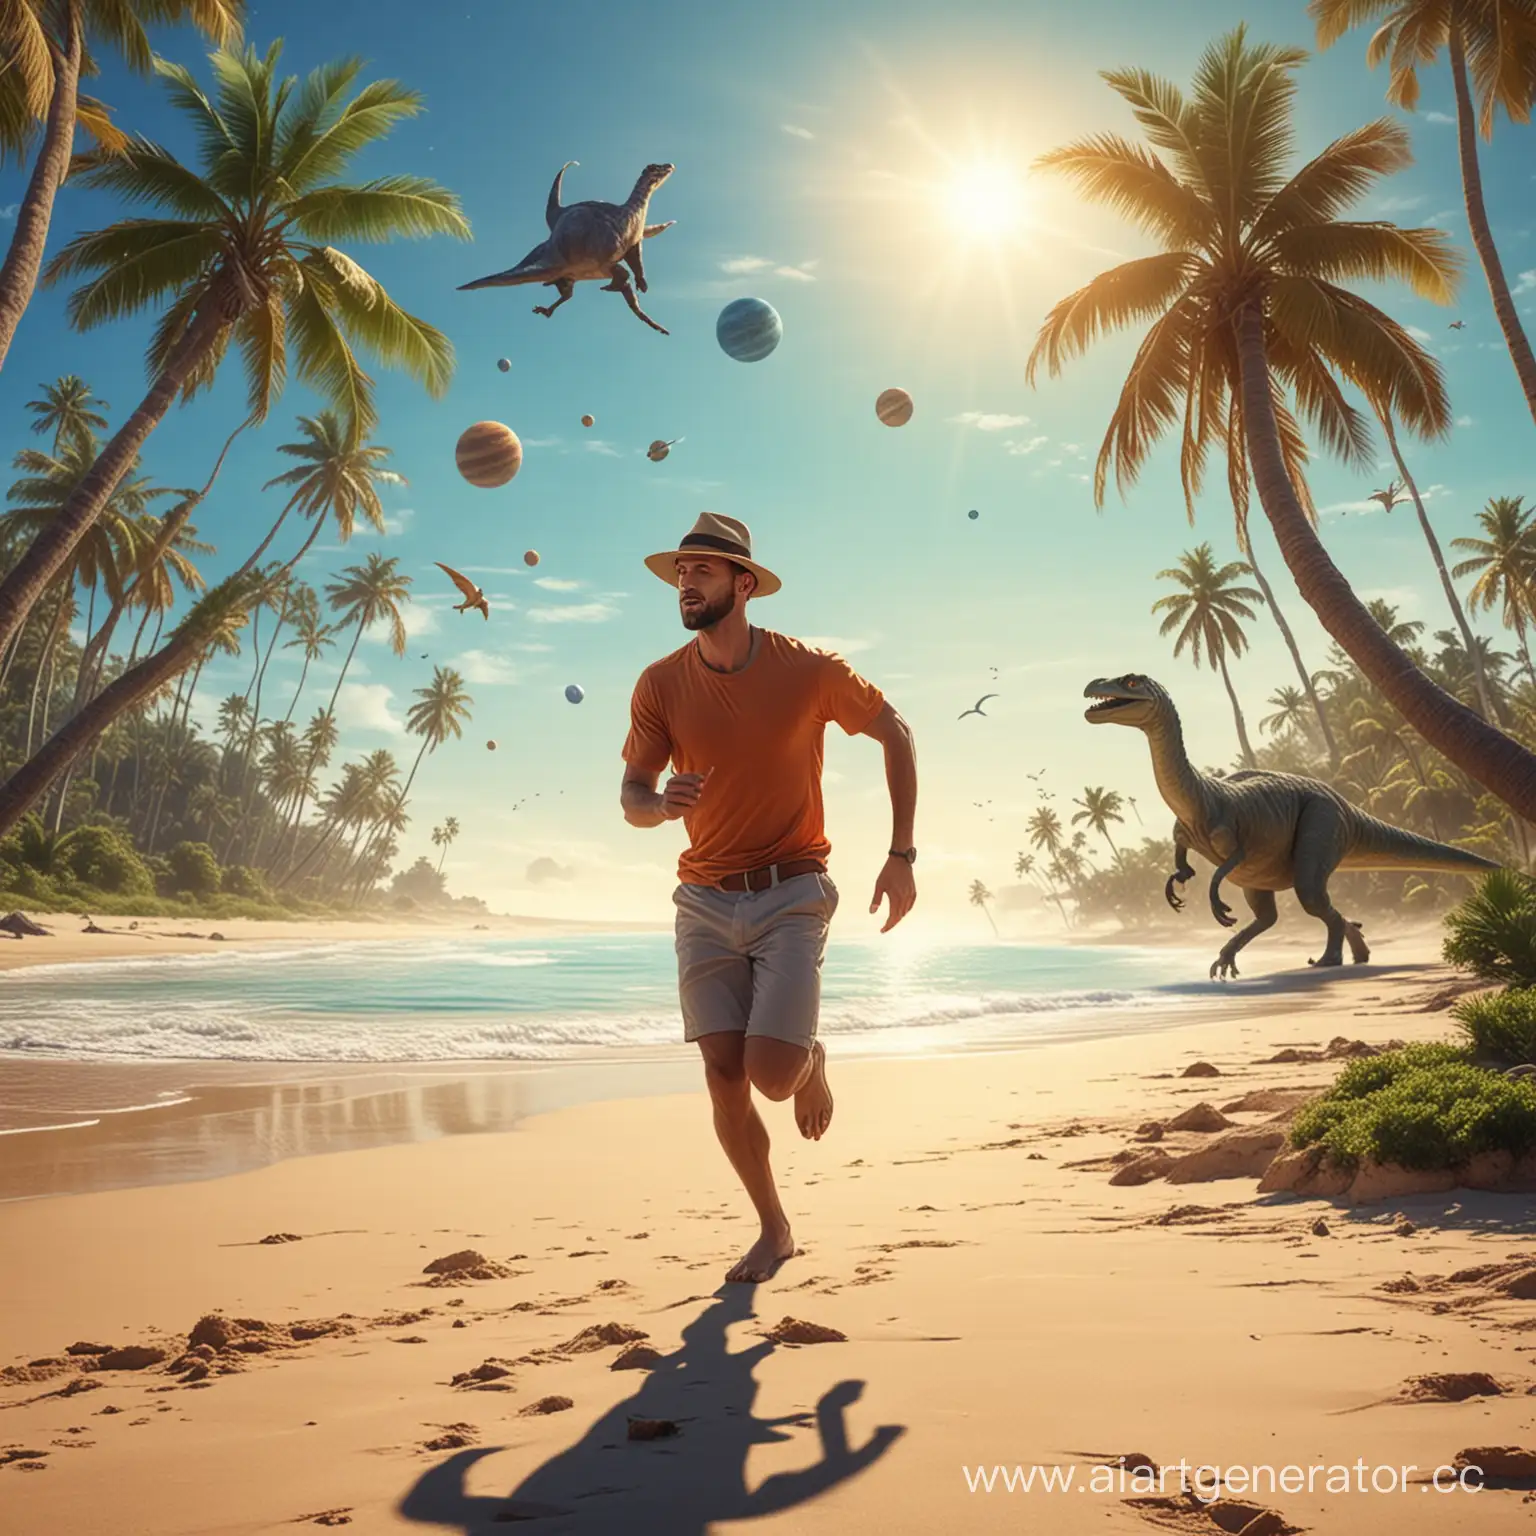 человек в шляпе бежит по пляжу, море, пальмы, динозавры, планеты